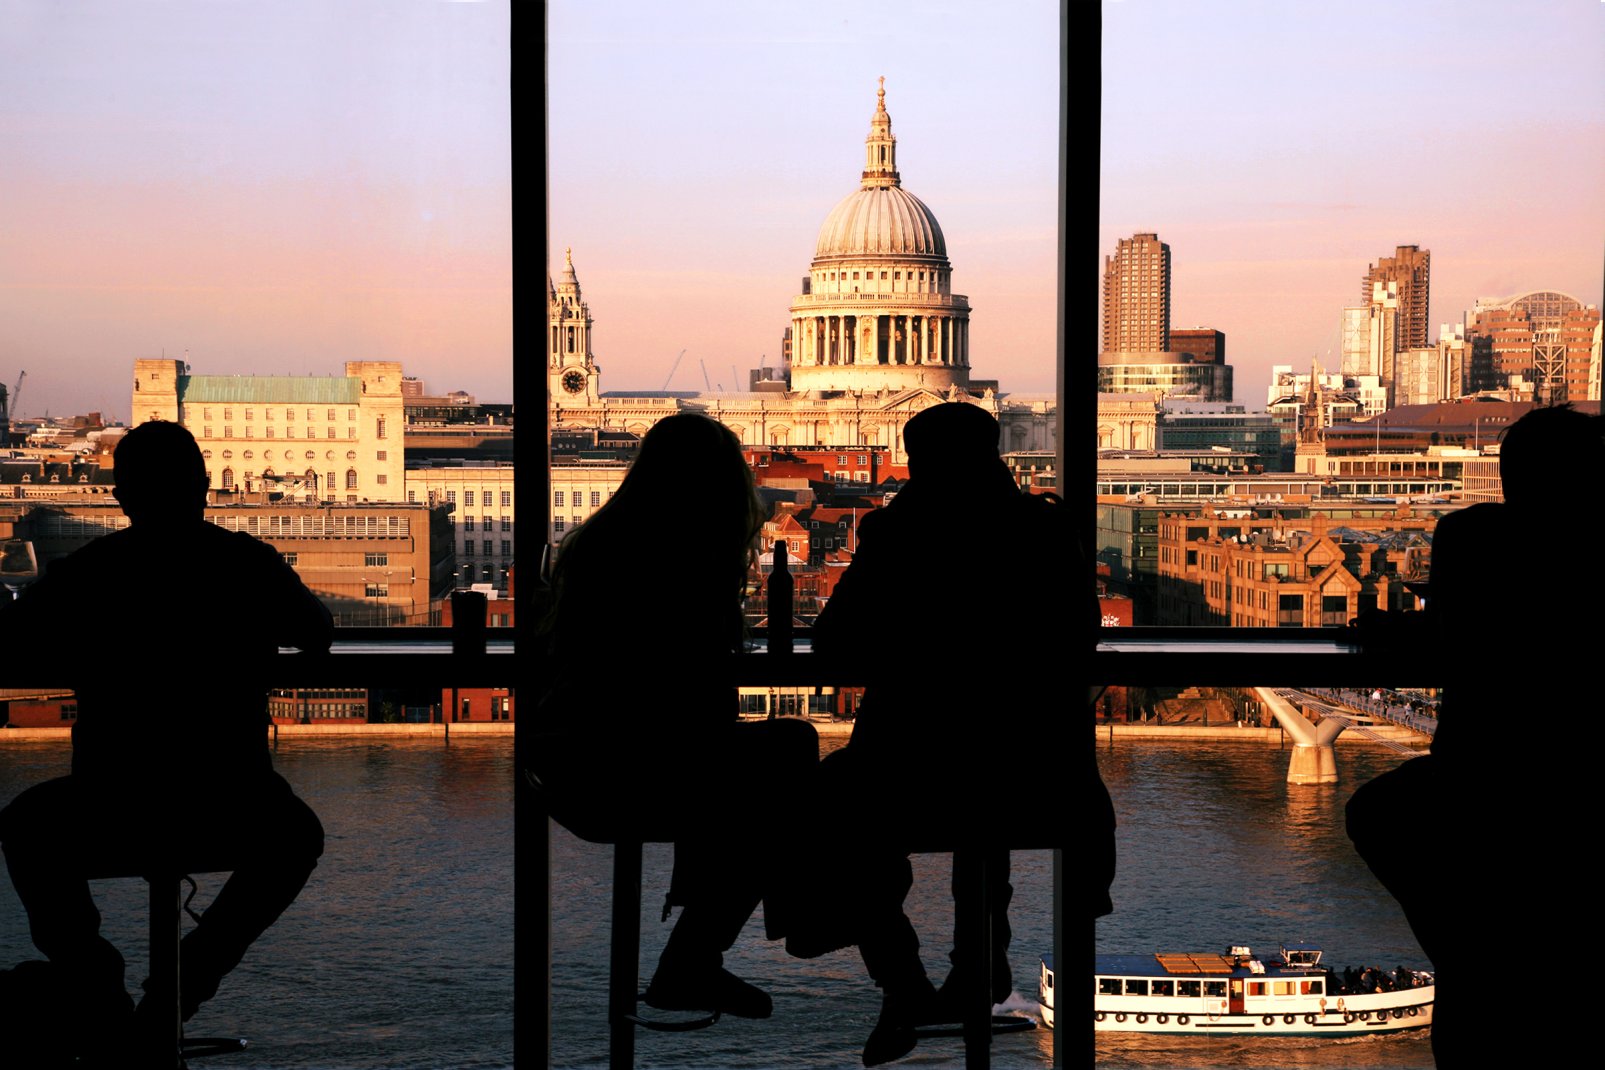 La verrière du Tate Modern permet aux visiteurs d'admirer la catrhédrale Saint-Paul et le pont  du Millenium (Millennium Bridge) enjambant la Tamise.